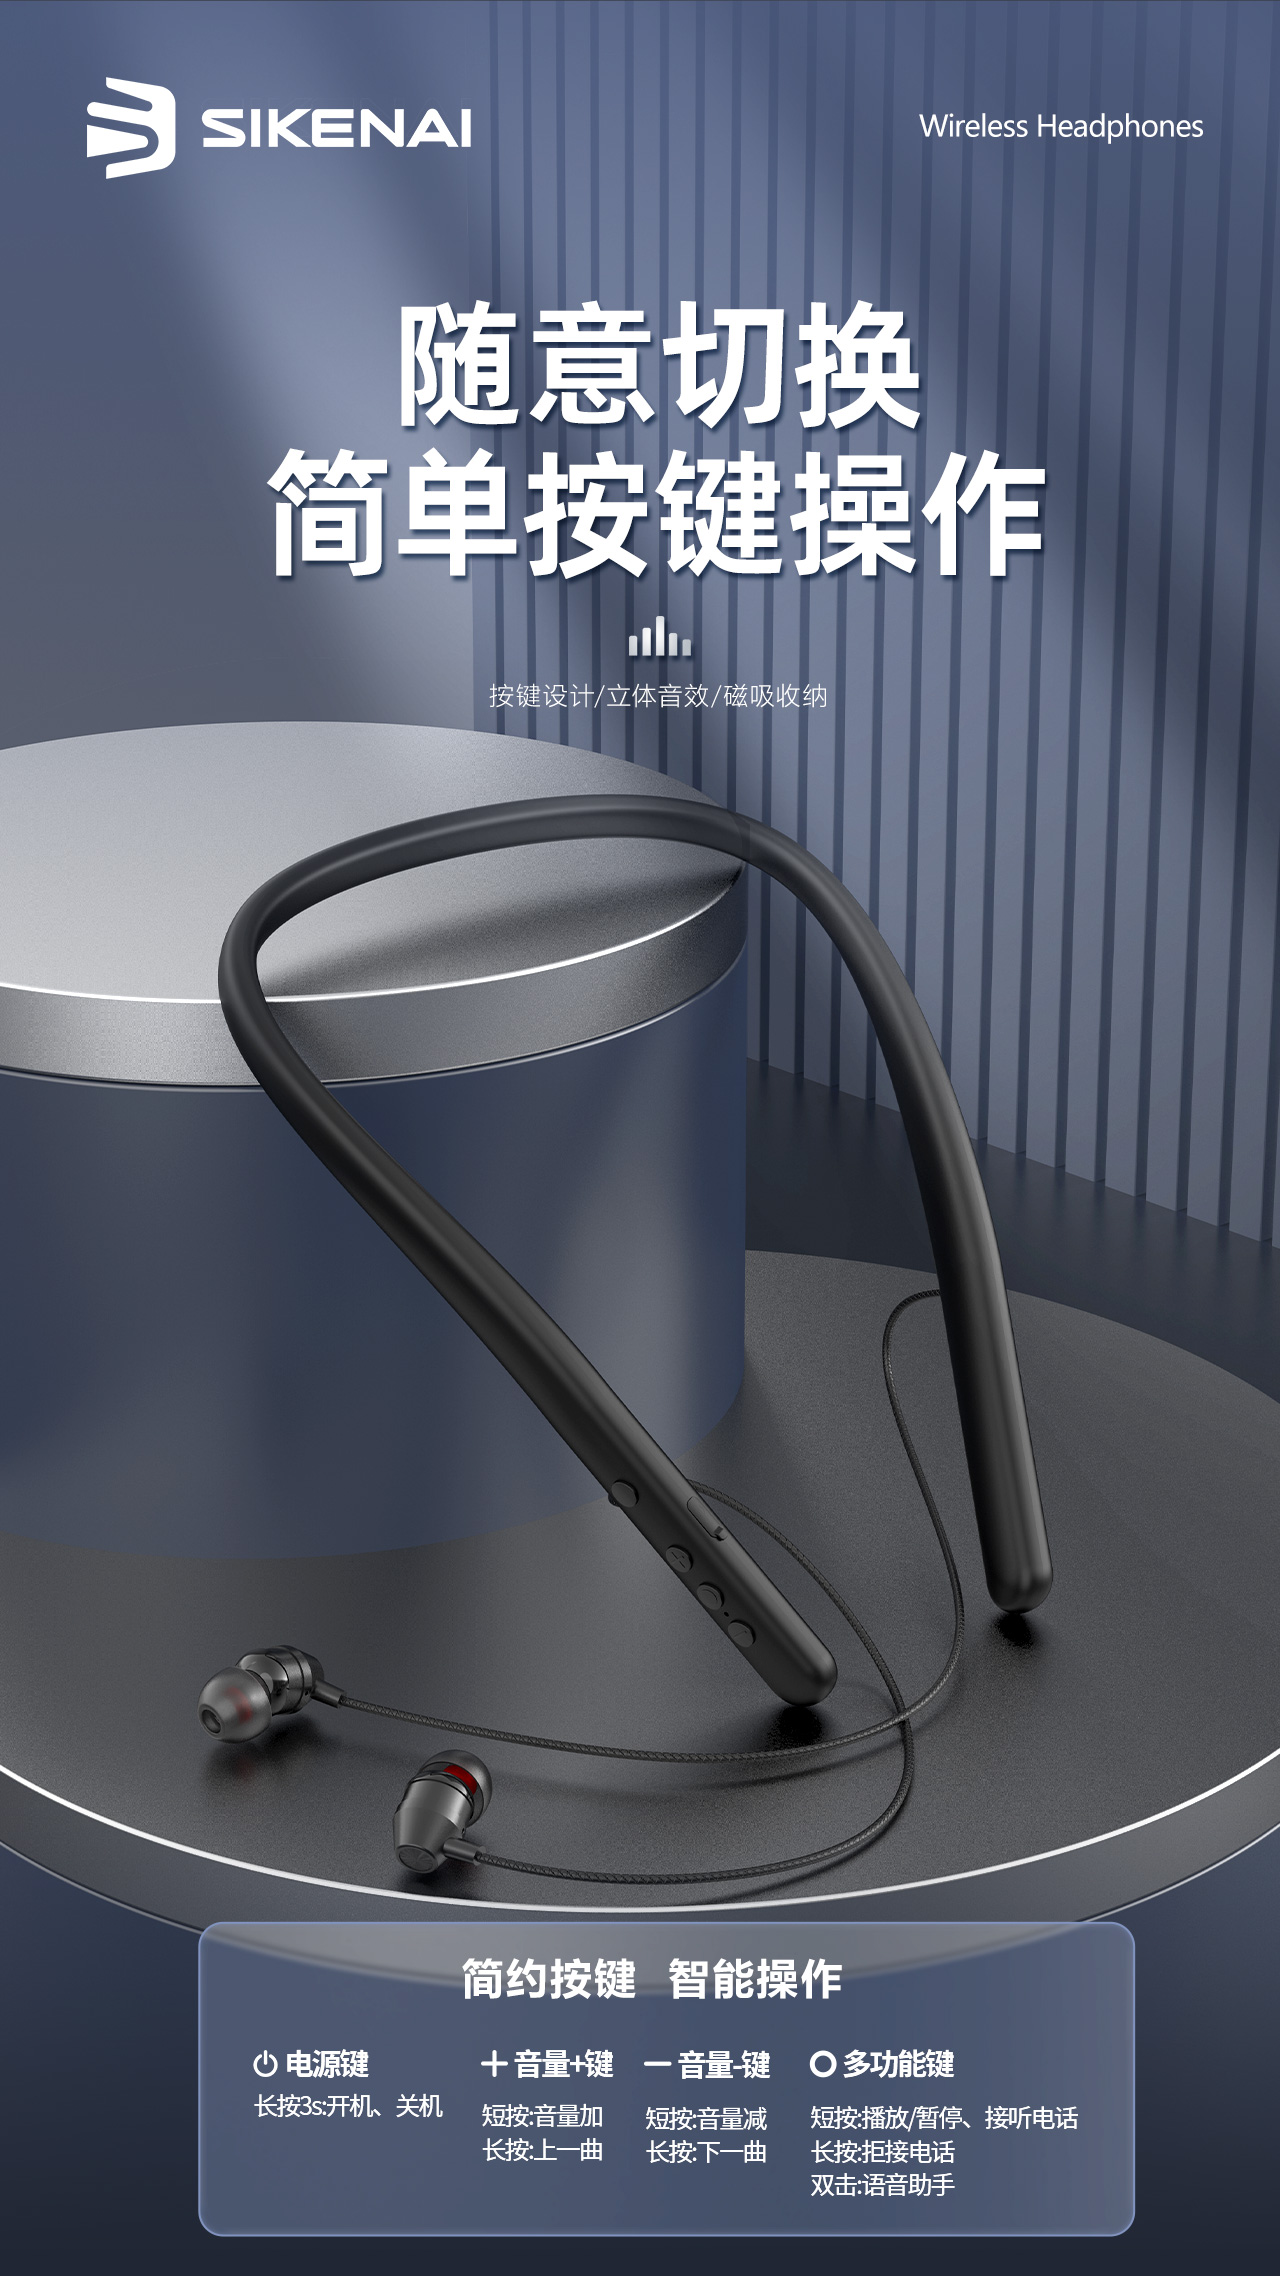 230612-LY-D60-运动蓝牙耳机详情页中文版_7.jpg